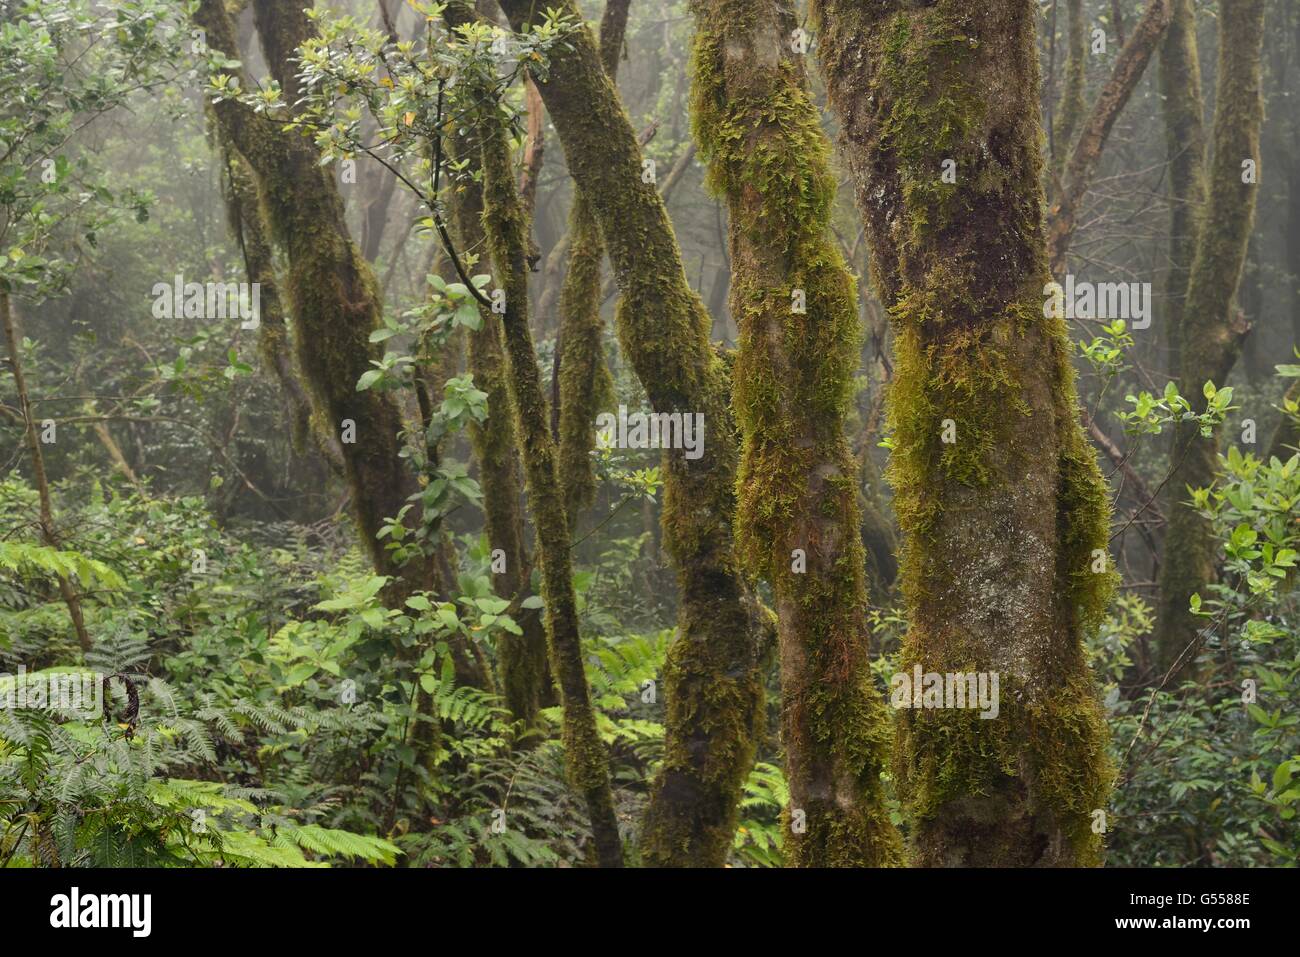 Árboles cubiertos de musgo y denso sotobosque de helechos en bosques montanos nubladas, bosque de laurisilva, las montañas de Anaga, Tenerife, Mayo. Foto de stock